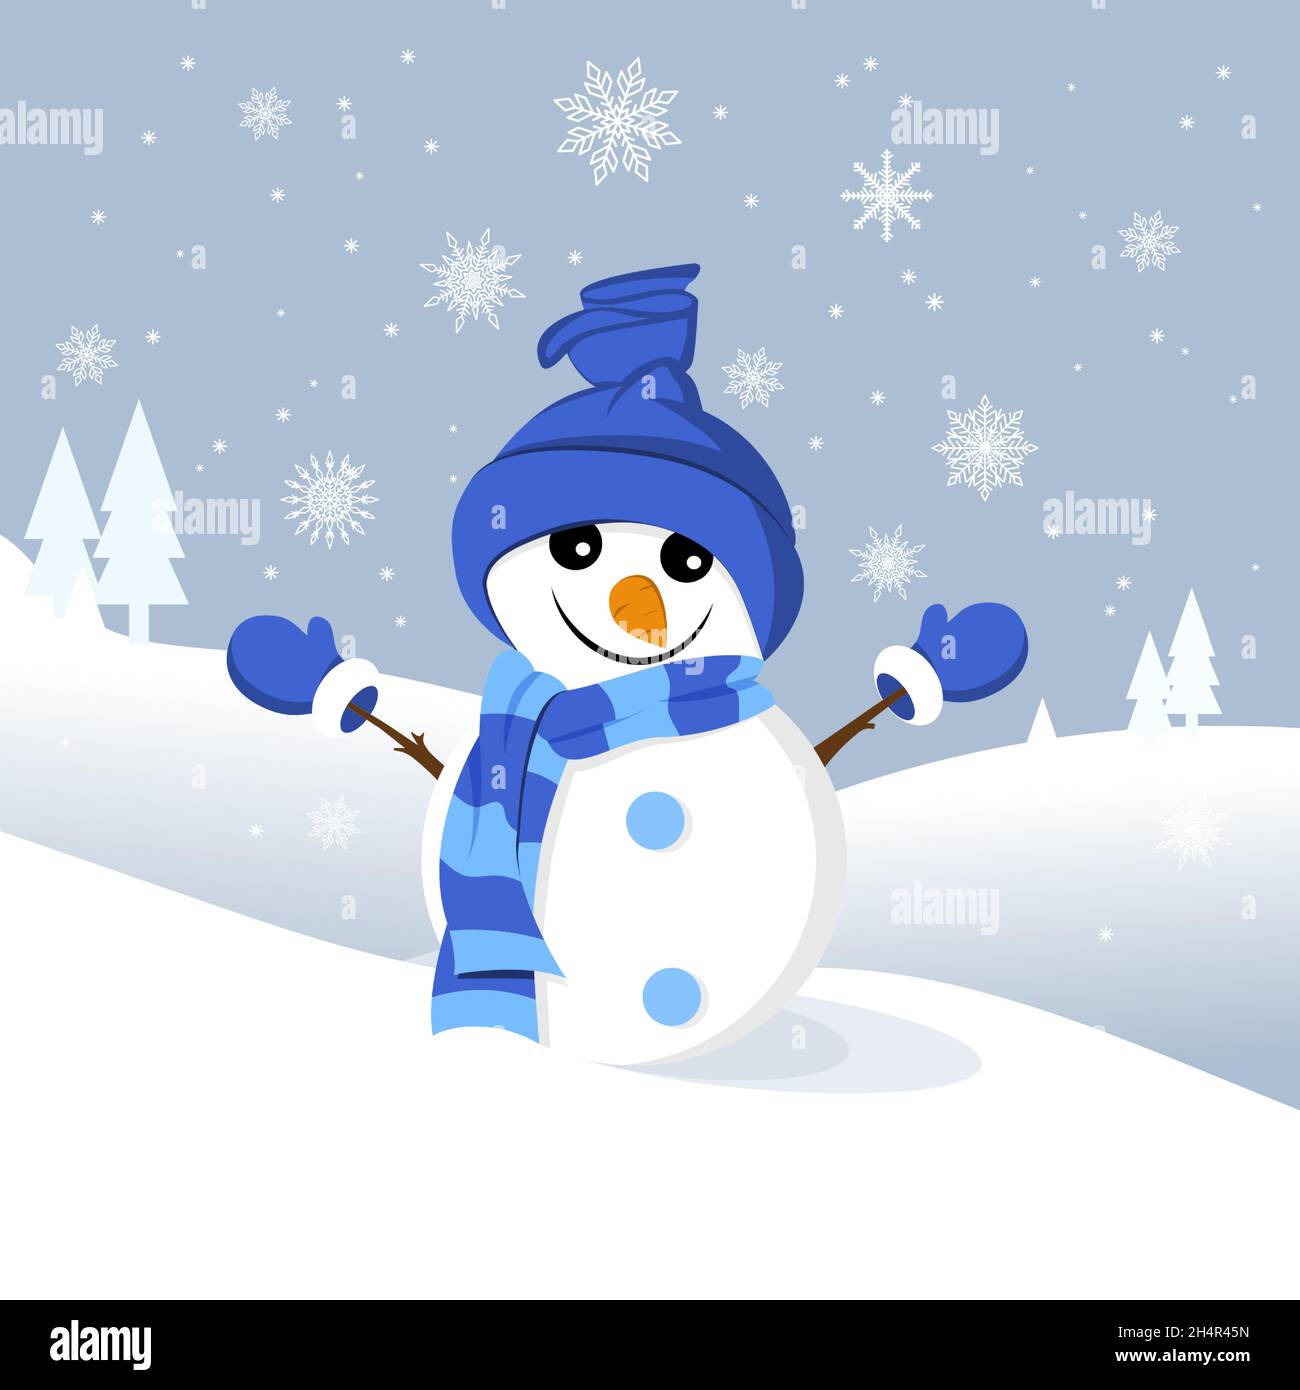 Tarjeta de felicitación navideña con un mono de nieve sobre fondo invernal con copos de nieve. Vector Ilustración del Vector